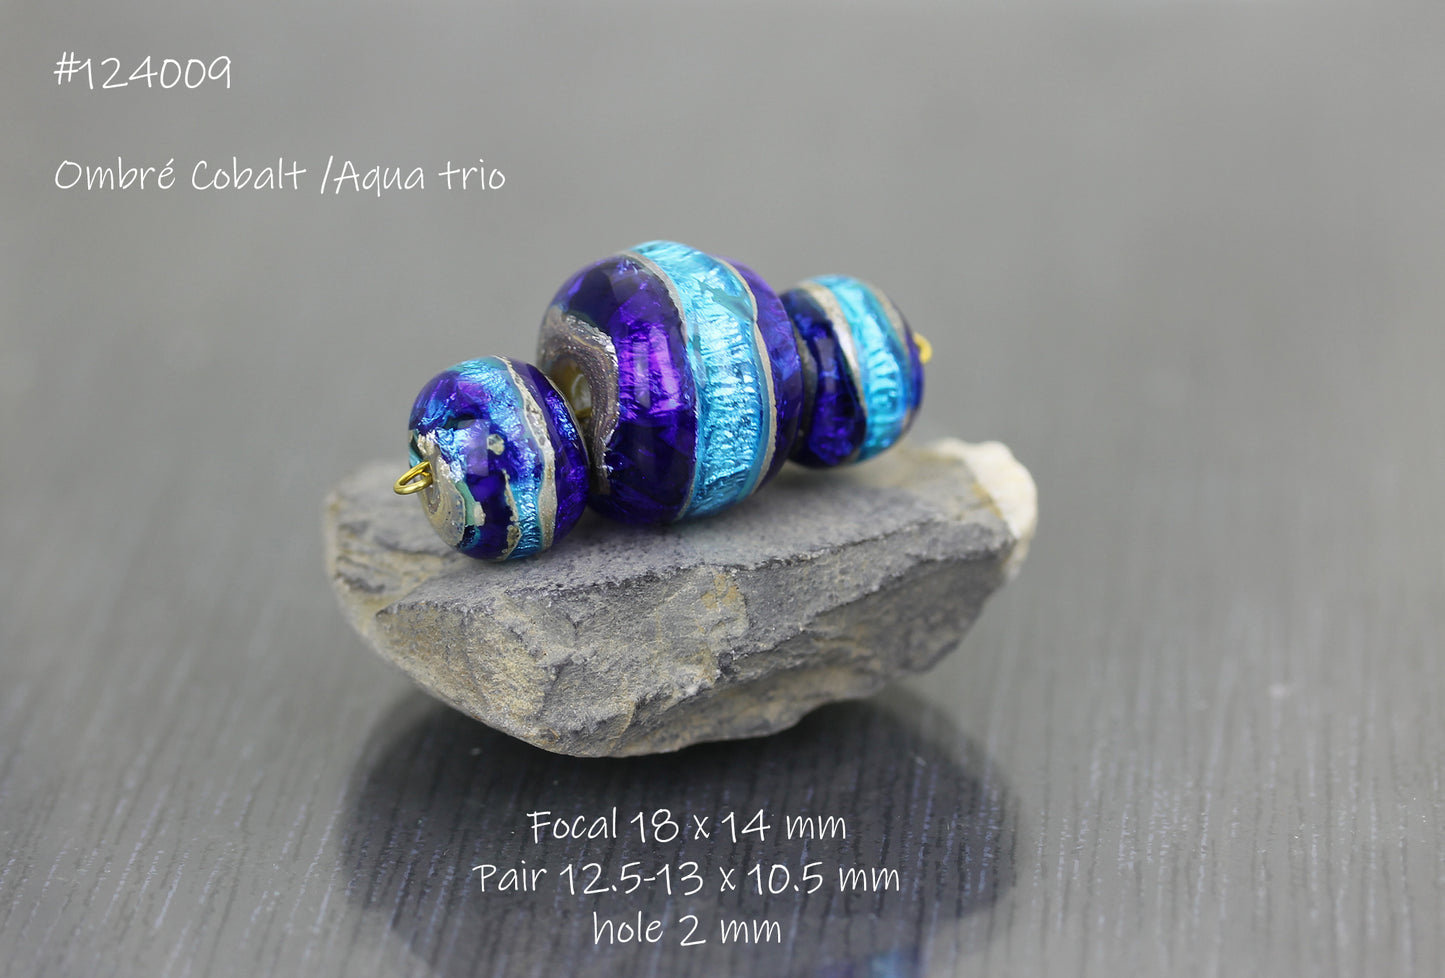 #124009 Aqua/cobalt ombré Sea Rocks trio